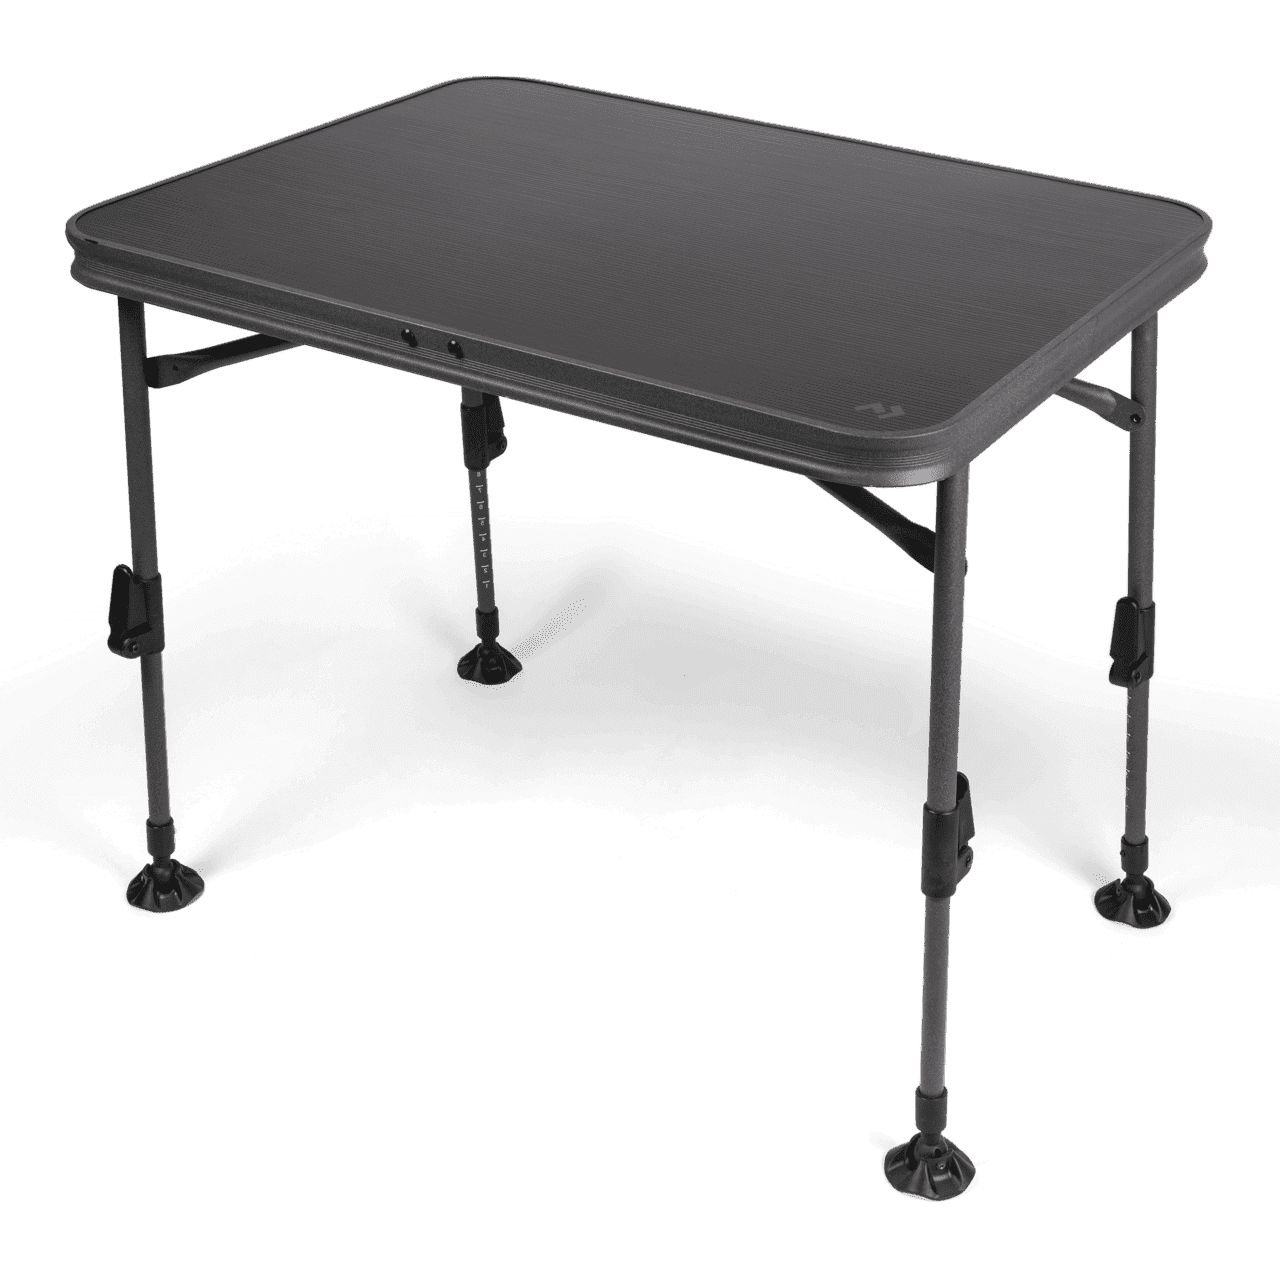 Dometic Campingtisch Element Table Medium   Aufstellmaß: 80 x 71 x 60 cm Gewicht: 4,99 kg